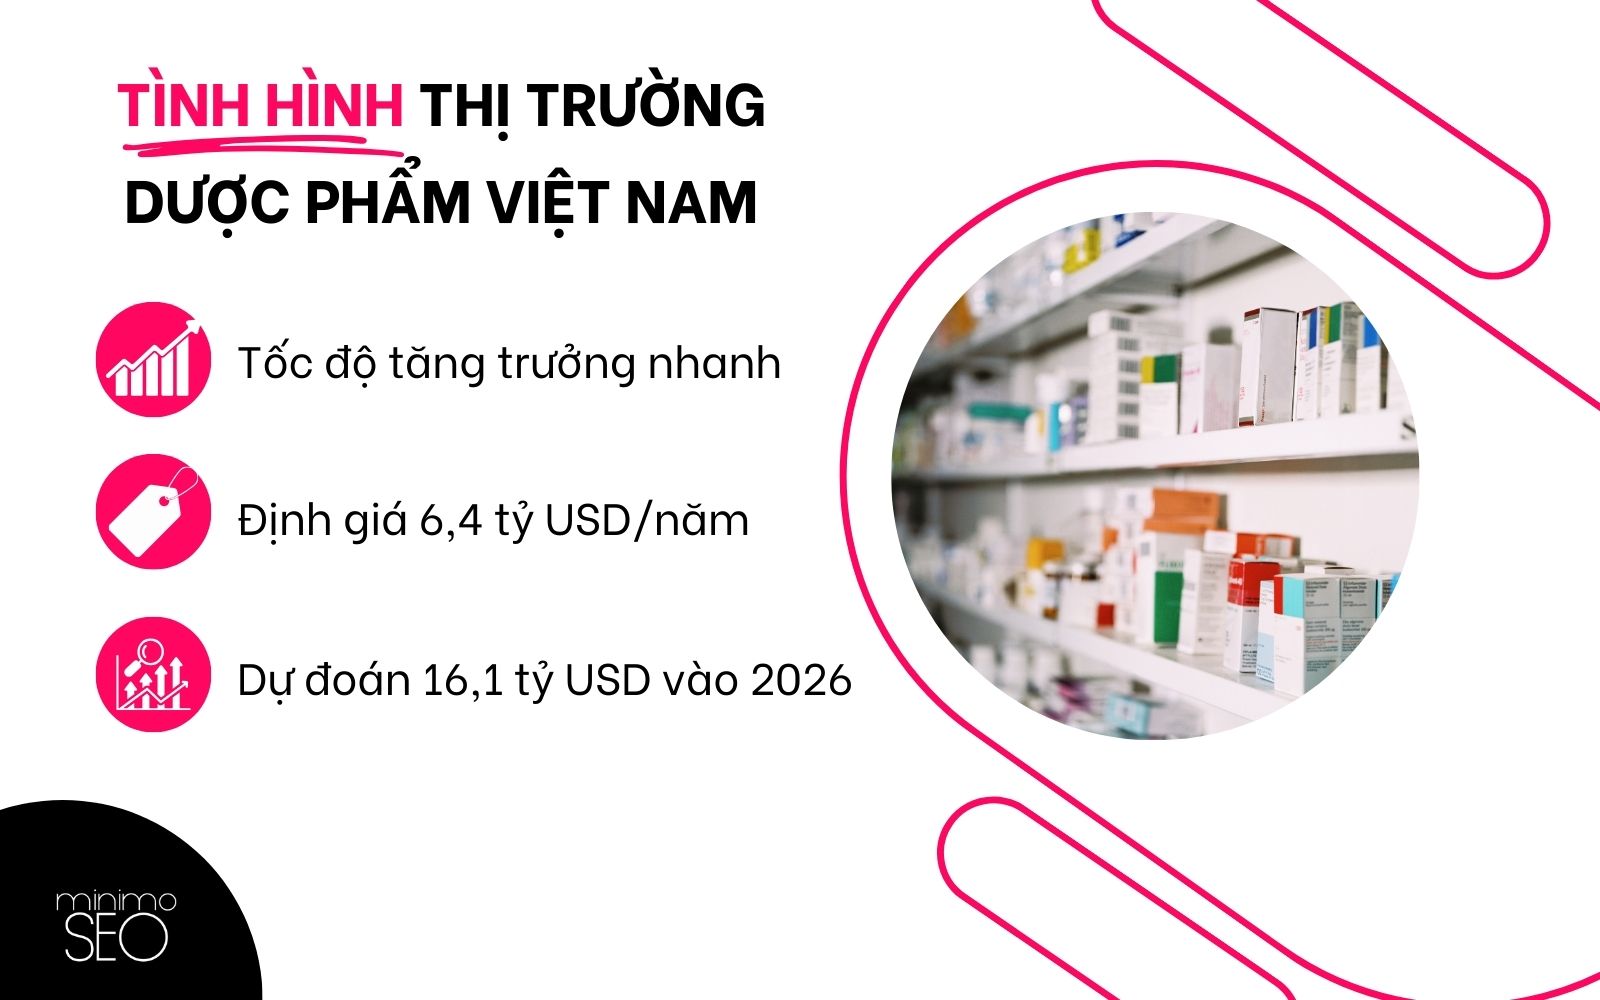 Tình hình thị trường dược phẩm Việt Nam